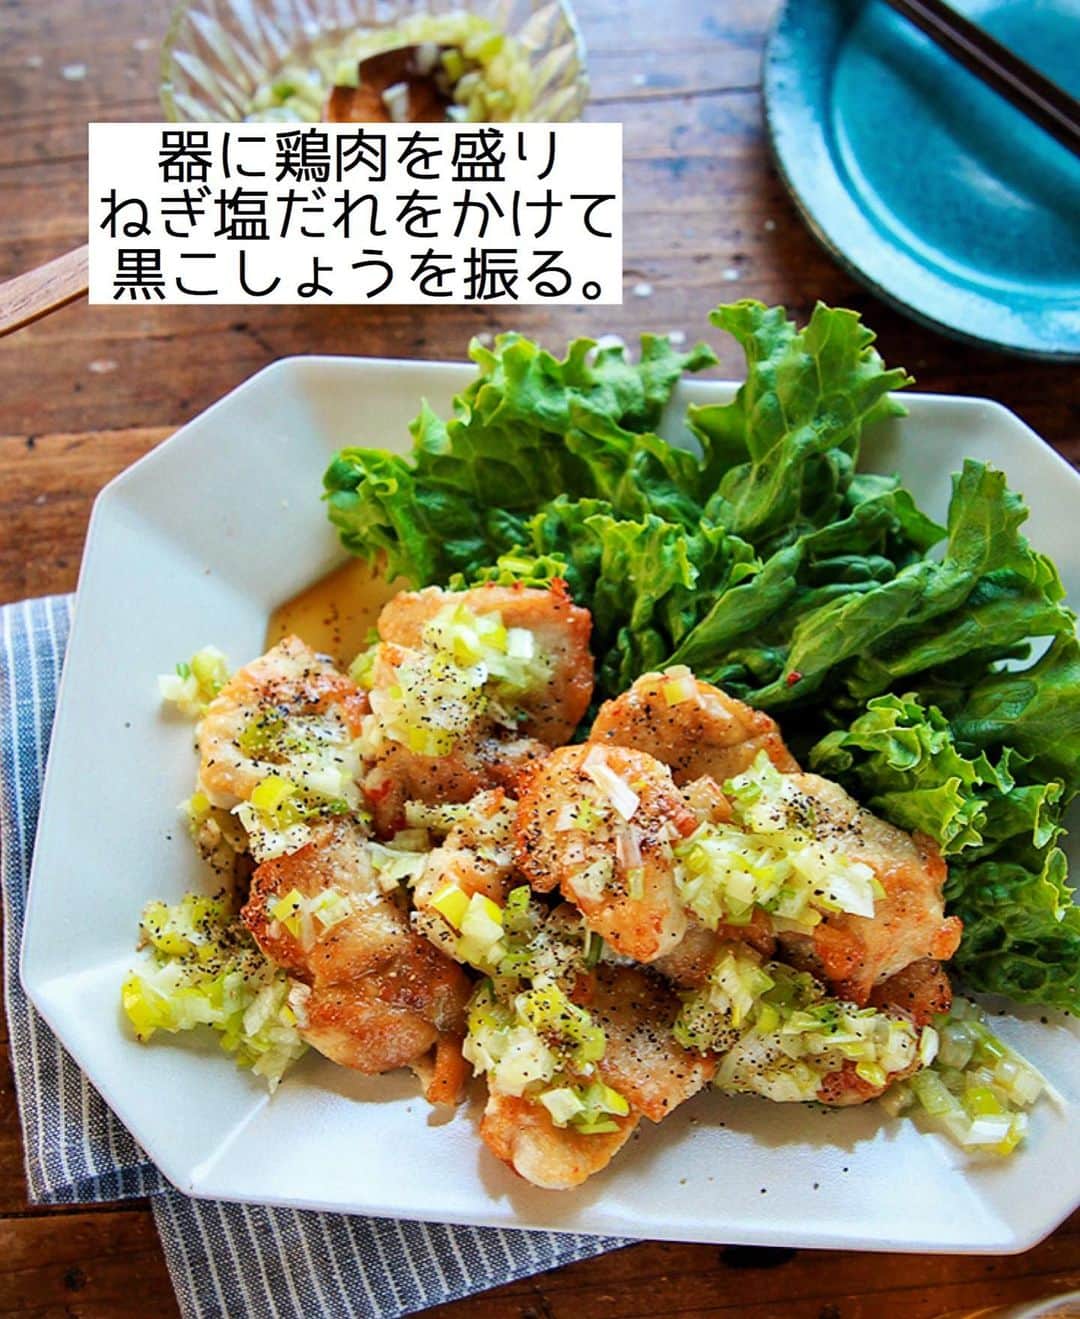 Mizuki【料理ブロガー・簡単レシピ】さんのインスタグラム写真 - (Mizuki【料理ブロガー・簡単レシピ】Instagram)「・﻿ 【#レシピ 】ーーーーーーーーー﻿ ♡鶏むね肉deねぎ塩チキン♡﻿ ーーーーーーーーーーーーーーー﻿ ﻿ ﻿ ﻿ おはようございます(*^^*)﻿ ﻿ 今日は鶏むね肉の節約おかず﻿ \\ ねぎ塩チキン // のご紹介です♡﻿ ﻿ パサつきがちな鶏むね肉も﻿ 少しの工夫でしっとり柔らか♩﻿ ねぎ塩だれはあっさりコクうま！﻿ 黒こしょうのパンチが効いて﻿ ごはんもお酒もすすみますよ〜♡﻿ ﻿ とっても簡単にできるので﻿ よかったらお試し下さいね(*´艸`)﻿ ﻿ ﻿ ﻿ ＿＿＿＿＿＿＿＿＿＿＿＿＿＿＿＿＿＿＿＿﻿ 【2人分】﻿ 鶏むね肉...大1枚(300g)﻿ 塩こしょう...少々﻿ 薄力粉...適量﻿ サラダ油...大1﻿ ●長ねぎ(みじん切り)...1/3本﻿ ●ごま油...大2﻿ ●塩...小1/3﻿ ●鶏がらスープ...ひとつまみ﻿ (好みで)粗挽き黒こしょう...適量﻿ ﻿ ﻿ 1.●を混ぜ合わせてねぎ塩だれを作る。鶏肉は全体をフォークで刺して1cm厚さの削ぎ切りにし、塩こしょうを振って薄力粉をまぶす。﻿ 2.フライパンにサラダ油を中火で熱して鶏肉を焼く。焼き色が付いたら裏返し、蓋をして弱めの中火で3分蒸し焼きにする。﻿ 3.器に2を盛り、ねぎ塩だれをかけ、黒こしょうを振る。﻿ ￣￣￣￣￣￣￣￣￣￣￣￣￣￣￣￣￣￣￣￣﻿ ﻿ ﻿ ﻿ ﻿ 《ポイント》﻿ ♦︎鶏もも肉で作っても◎﻿ ♦︎仕上げにレモンを絞っても美味しいです♩﻿ ﻿ ﻿ ﻿ ﻿ ﻿ ﻿ ﻿ ﻿ 📕新刊発売中📕﻿ 【ラクしておいしい！#1品晩ごはん 】﻿ ￣￣￣￣￣￣￣￣￣￣￣￣￣￣￣￣￣﻿ 私たちだってヘトヘトな日がある•••﻿ 毎日何品も作っていられない•••﻿ もうごはんに悩みたくない😢﻿ そんな時、1品ごはんはいかがでしょう？﻿ というご提案です✨﻿ ﻿ 【1品ごはん】は﻿ 副菜いらずで全てがシンプル！﻿ ￣￣￣￣￣￣￣￣￣￣￣￣￣￣￣￣￣￣﻿ 一品つくるだけでいいから﻿ 献立を考えなくてよし！﻿ ￣￣￣￣￣￣￣￣￣￣￣￣￣￣￣￣￣￣﻿ 悩まない、疲れない、﻿ 気力や時間がなくてもなんとかなる！﻿ ￣￣￣￣￣￣￣￣￣￣￣￣￣￣￣￣￣￣﻿ そんな頼りになる﻿ 便利なお助けごはんです☺️💕﻿ (ハイライトに🔗貼っています✨)﻿ ￣￣￣￣￣￣￣￣￣￣￣￣￣￣￣￣￣﻿ ﻿ ﻿ ﻿ ﻿ ﻿ ⭐️発売中⭐️﻿ ＿＿＿＿＿＿＿＿＿＿＿＿＿＿＿＿＿＿﻿ しんどくない献立、考えました♩﻿ \15分でいただきます/﻿ 📕#Mizukiの2品献立 📕﻿ ﻿ 和食をもっとカジュアルに♩﻿ \毎日のごはんがラクになる/﻿ 📘#Mizukiの今どき和食 📘﻿ ﻿ ホケミレシピの決定版♩﻿ \はじめてでも失敗しない/﻿ 📙#ホットケーキミックスのお菓子 📙﻿ ﻿ NHKまる得マガジンテキスト☆﻿ ホットケーキミックスで﻿ 📗絶品おやつ&意外なランチ📗﻿ ￣￣￣￣￣￣￣￣￣￣￣￣￣￣￣￣￣￣﻿ ﻿ ﻿ ﻿ ＿＿＿＿＿＿＿＿＿＿＿＿＿＿＿＿＿＿﻿ レシピを作って下さった際や﻿ レシピ本についてのご投稿には﻿ タグ付け( @mizuki_31cafe )して﻿ お知らせいただけると嬉しいです😊💕﻿ ￣￣￣￣￣￣￣￣￣￣￣￣￣￣￣￣￣￣﻿ ﻿ ﻿ ﻿ ﻿ #鶏むね肉#ねぎ塩チキン#ねぎ塩だれ#Mizuki#簡単レシピ#時短レシピ#節約レシピ#料理#フーディーテーブル#マカロニメイト#おうちごはん#デリスタグラマー#料理好きな人と繋がりたい#おうちごはんlover#写真好きな人と繋がりたい#foodpic#cooking#recipe#lin_stagrammer#foodporn#yummy#f52grams#ねぎ塩チキンm」1月5日 6時49分 - mizuki_31cafe